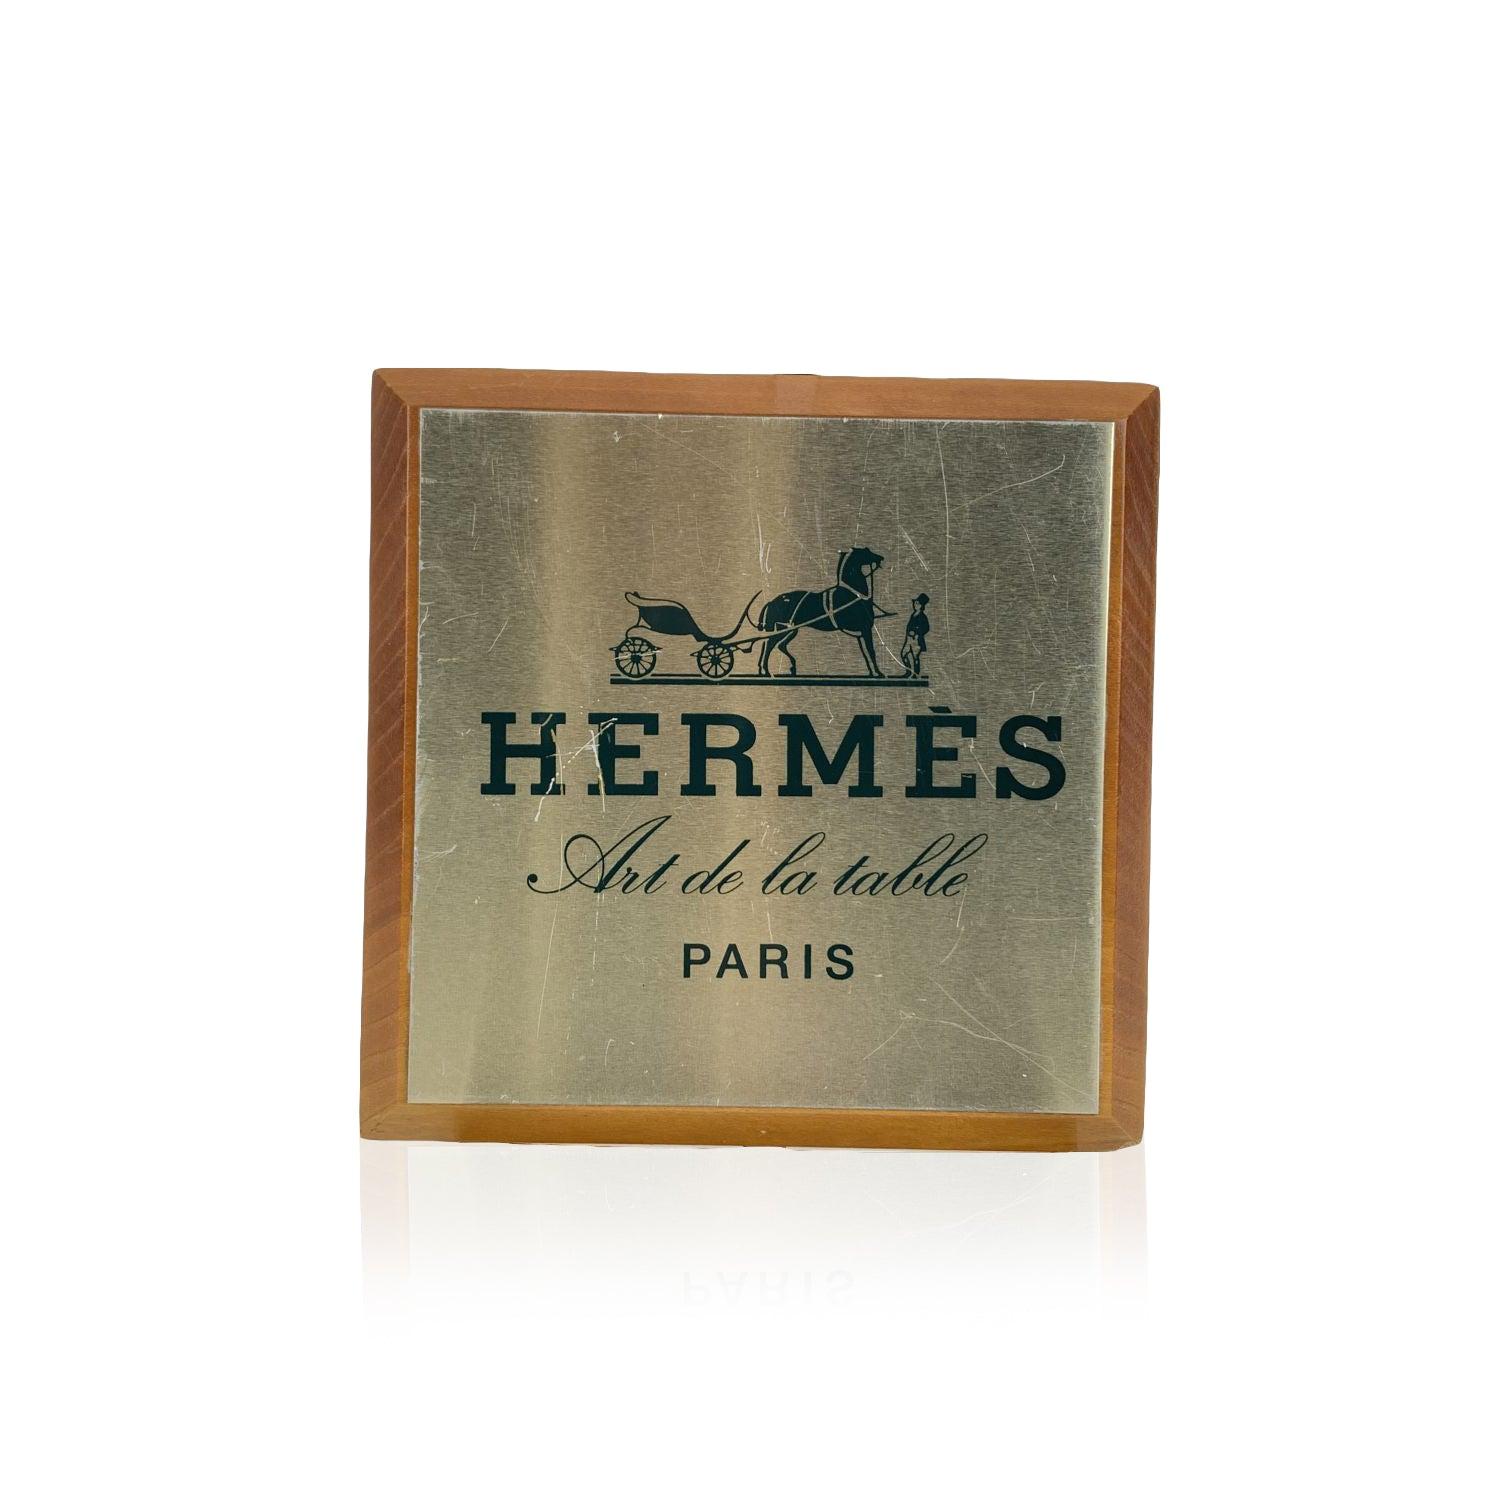 Vintage Hermes Regalaufsteller/Teller mit der Aufschrift 'Hermes Art de la table - Paris'. Quadratische Form. Hergestellt aus Holz, mit Oberseite aus hellgoldfarbenem Metall. Abmessungen: 6.5 x 6.5 inches - 16,5 x 16,5 cm Details MATERIAL: Holz